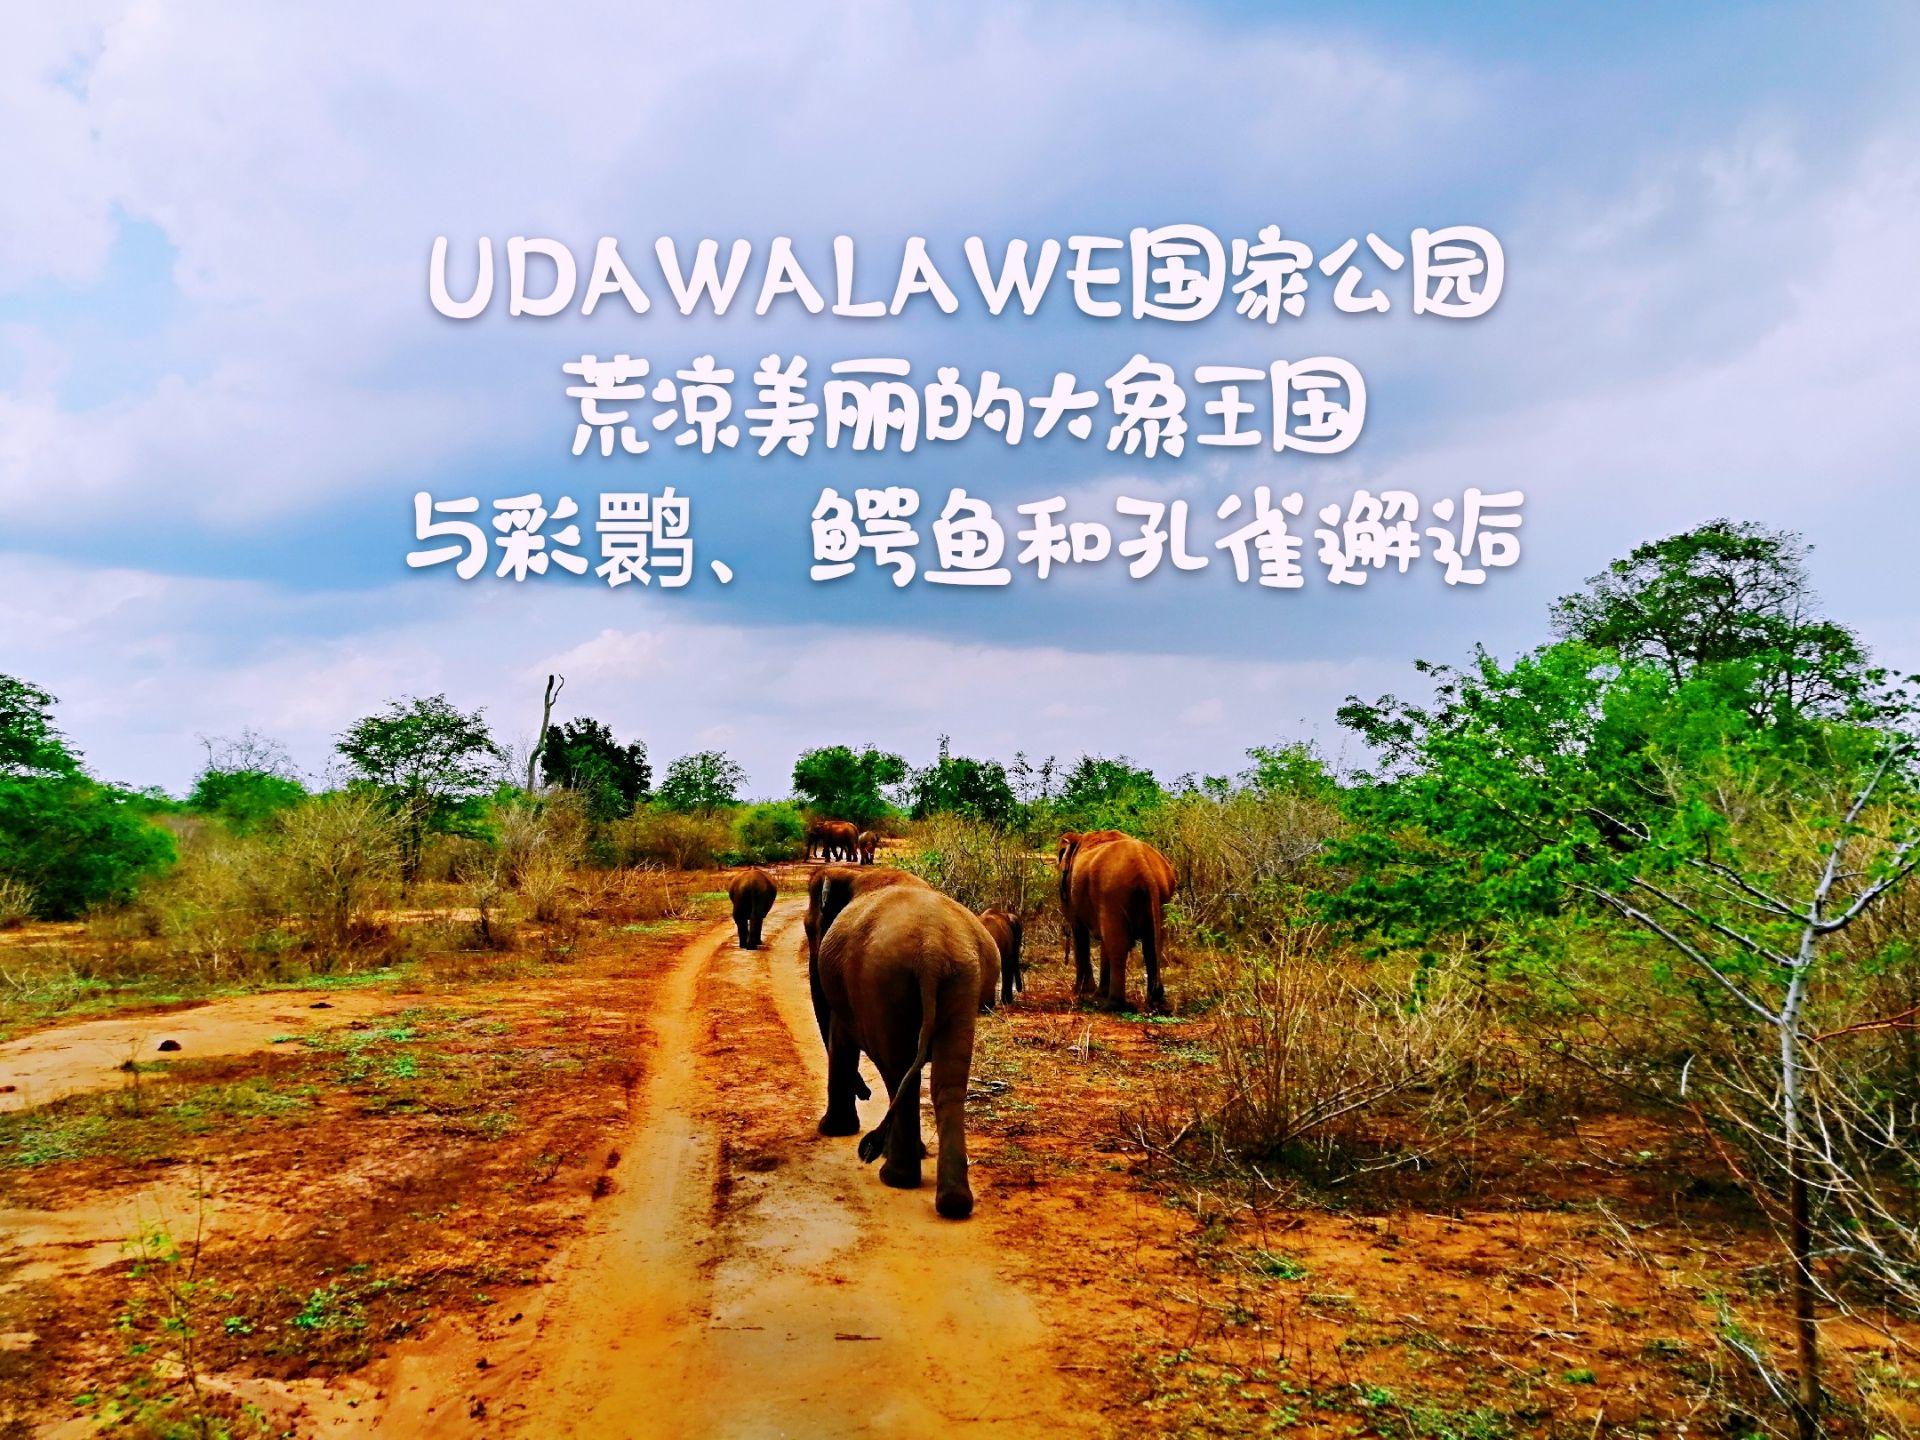 如果你最喜欢的动物是大象，那么你在锡兰不用去其它地方，UDAWALAWE国家公园就足够了。 许多人向